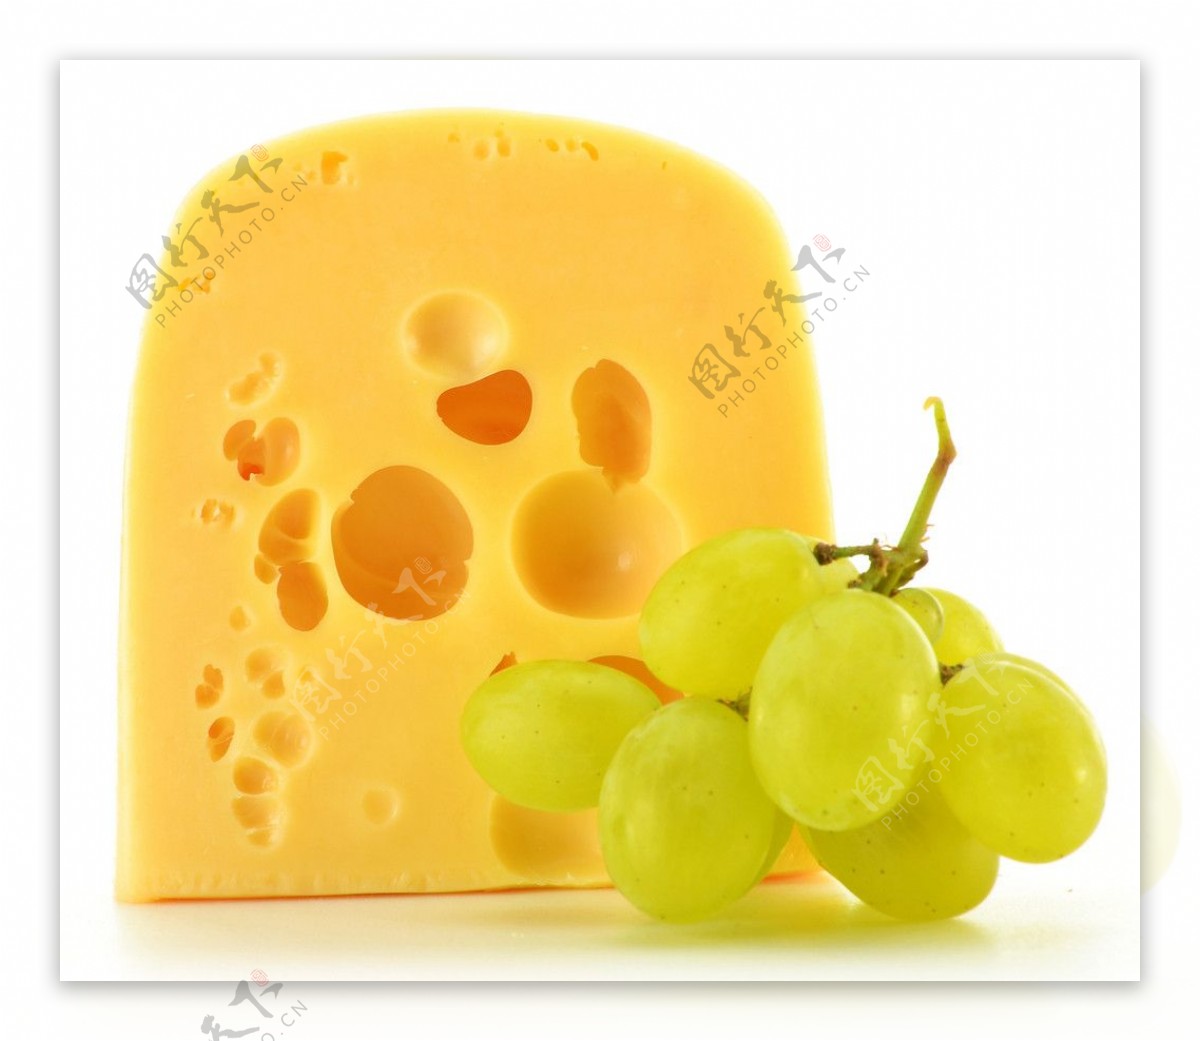 美味奶酪葡萄图片